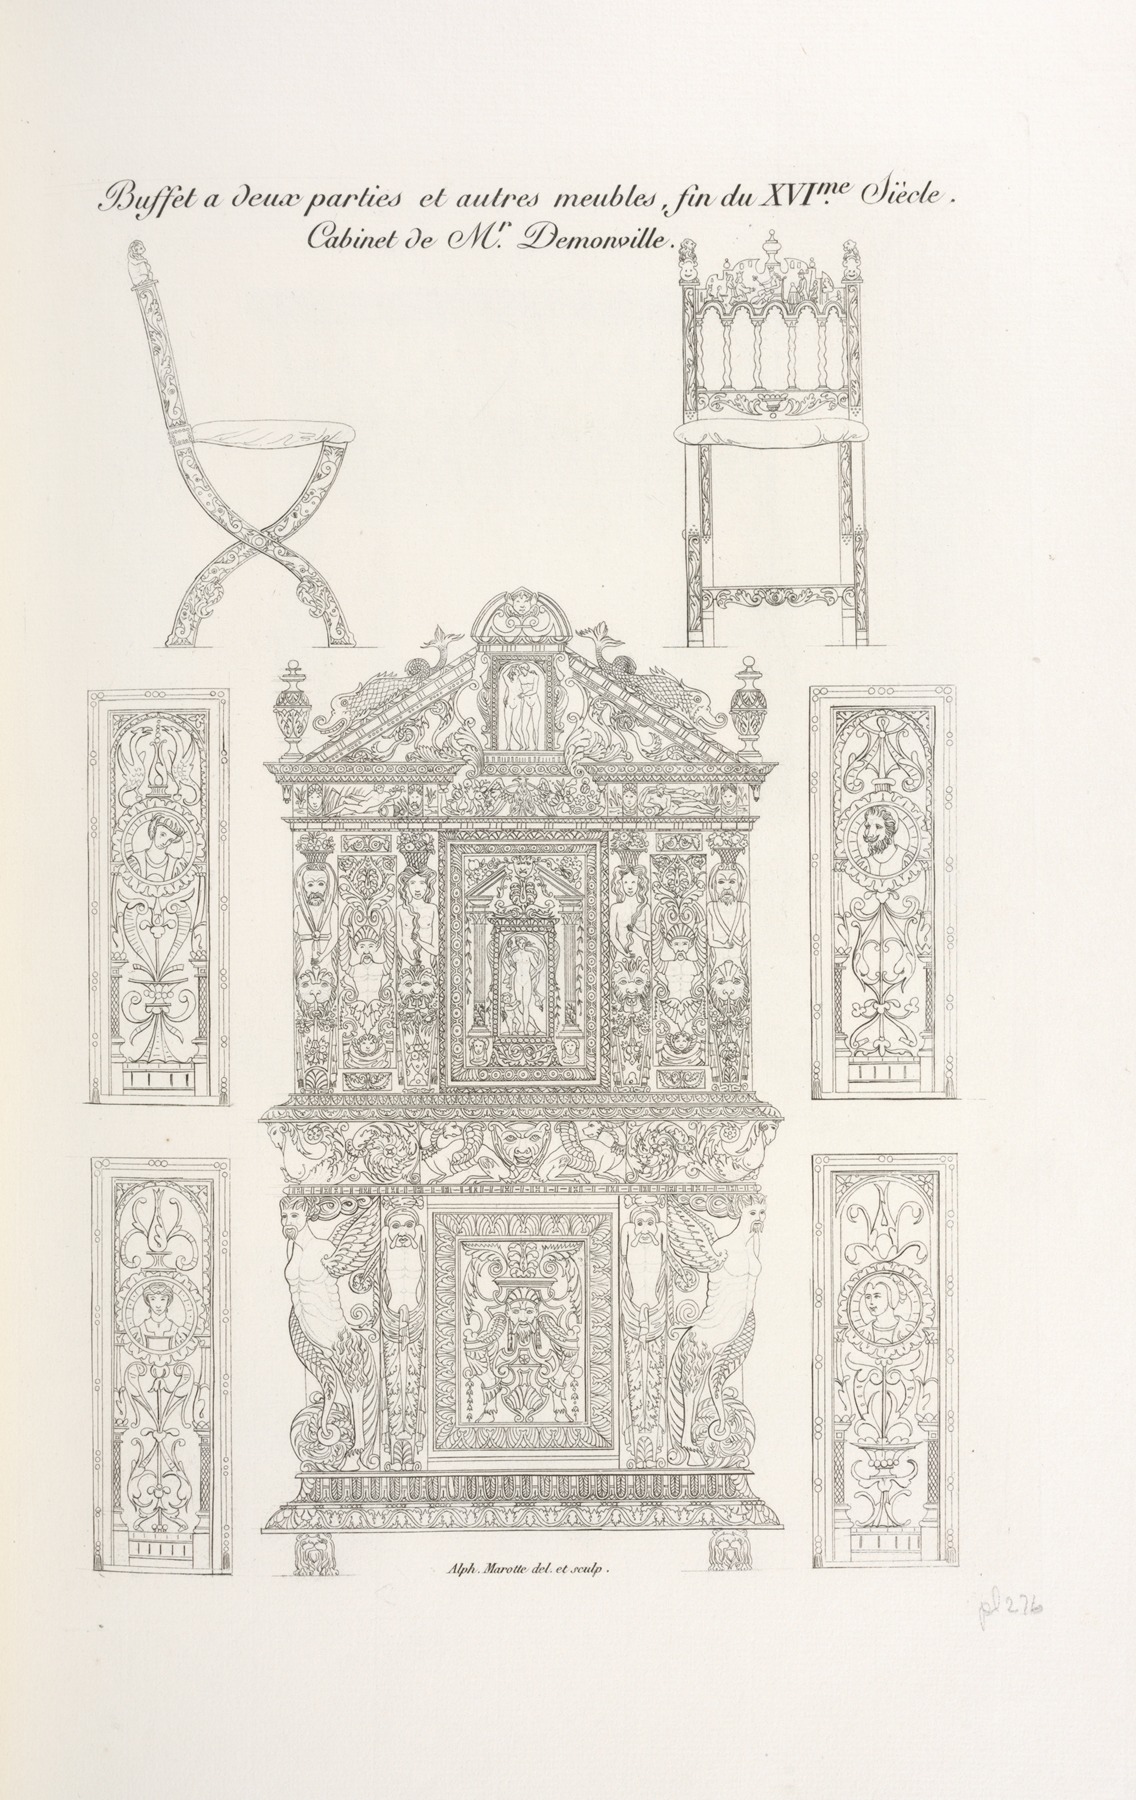 Nicolas Xavier Willemin - Buffet à deux parties et autres meubles, fin du XVIme. siècles. Cabineet de Mr. Demonville.